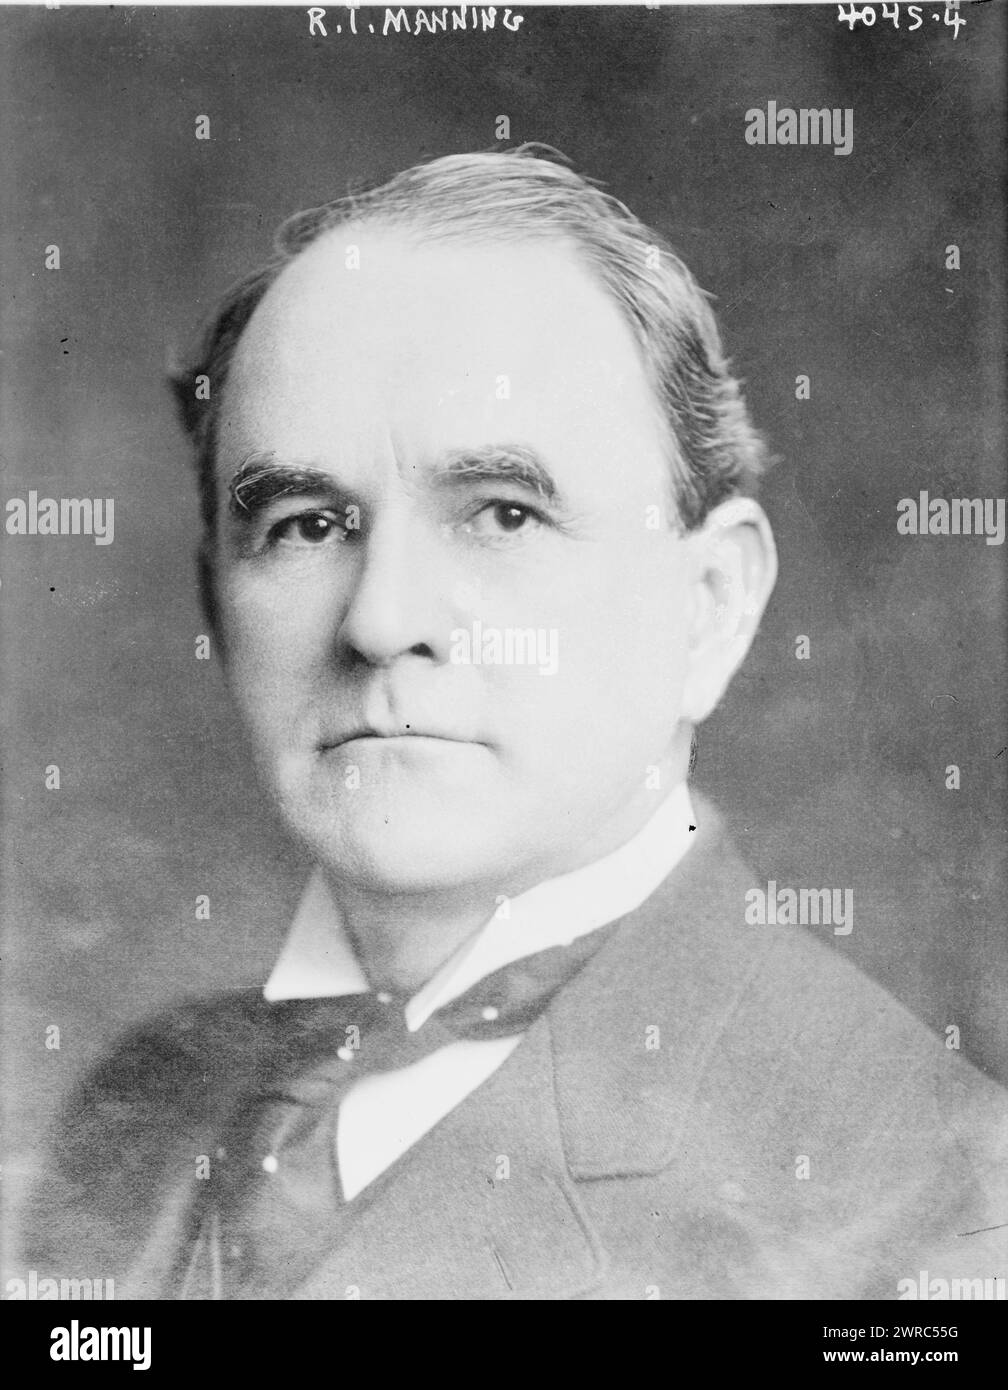 R.I. Manning, Foto zeigt den South Carolina Politiker Richard Irvine Manning III (1859–1931), der als Gouverneur von South Carolina (1916–1919) diente. 1915 und ca. 1920, Glasnegative, 1 negativ: Glas Stockfoto